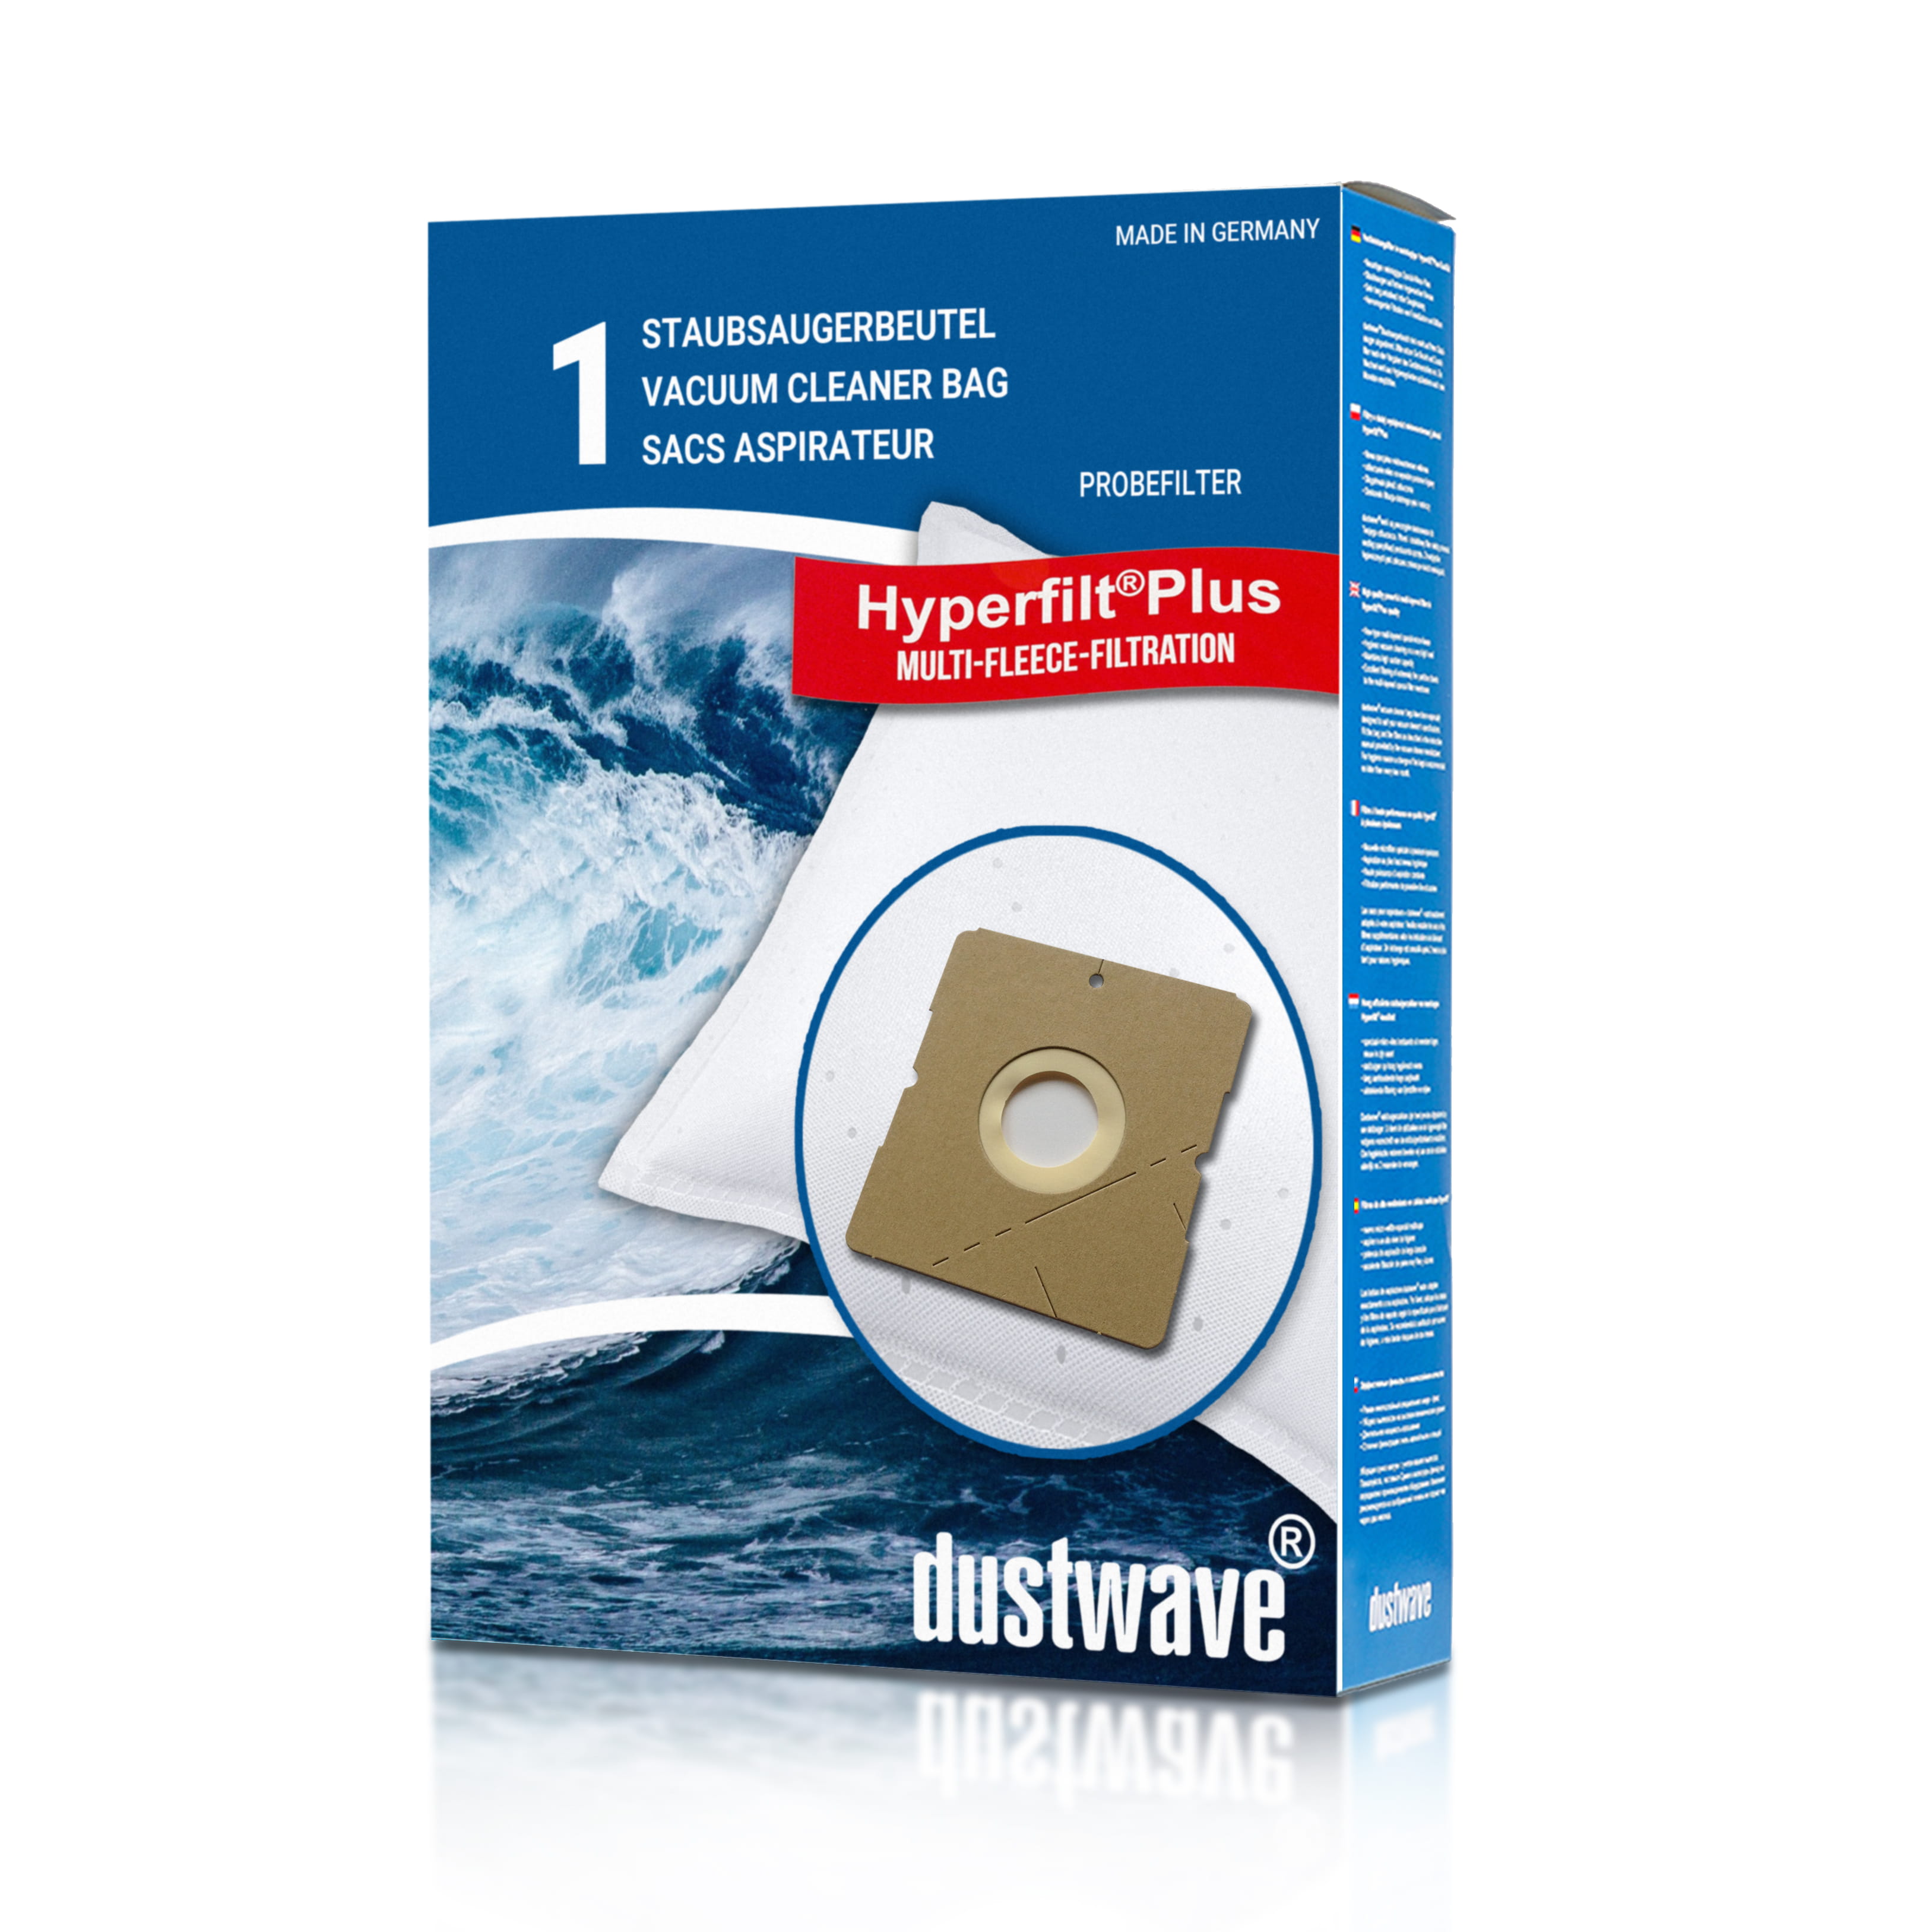 Dustwave® 1 Staubsaugerbeutel für Emerio VE-108312 - hocheffizient mit Hygieneverschluss - Made in Germany